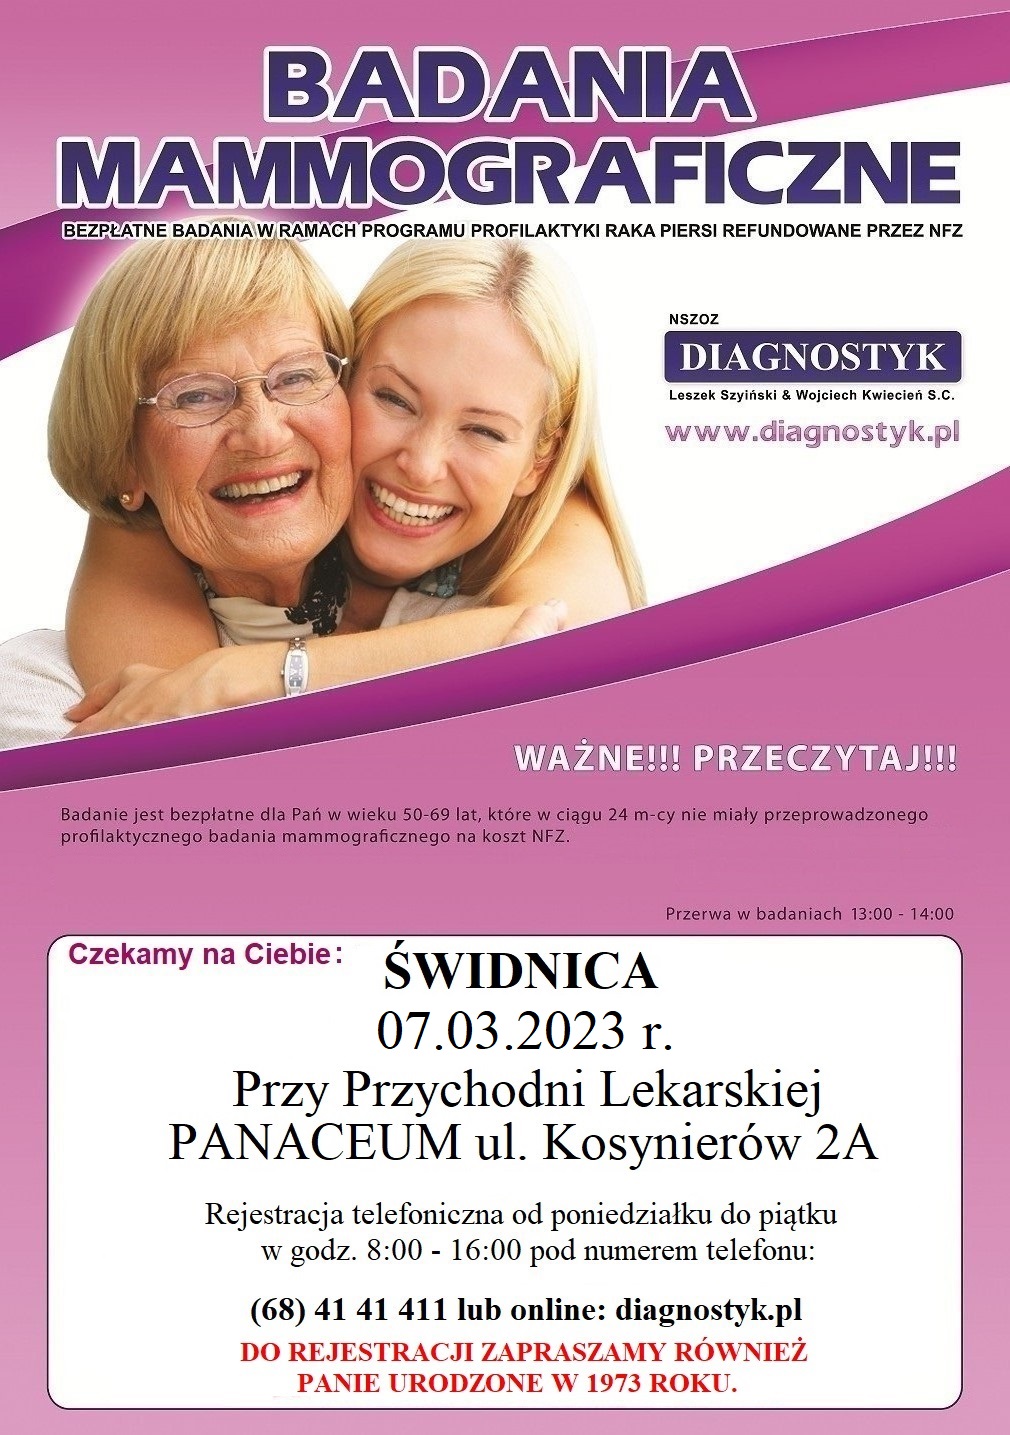 Plakat promujący badanie mammograficzne w Świdnicy